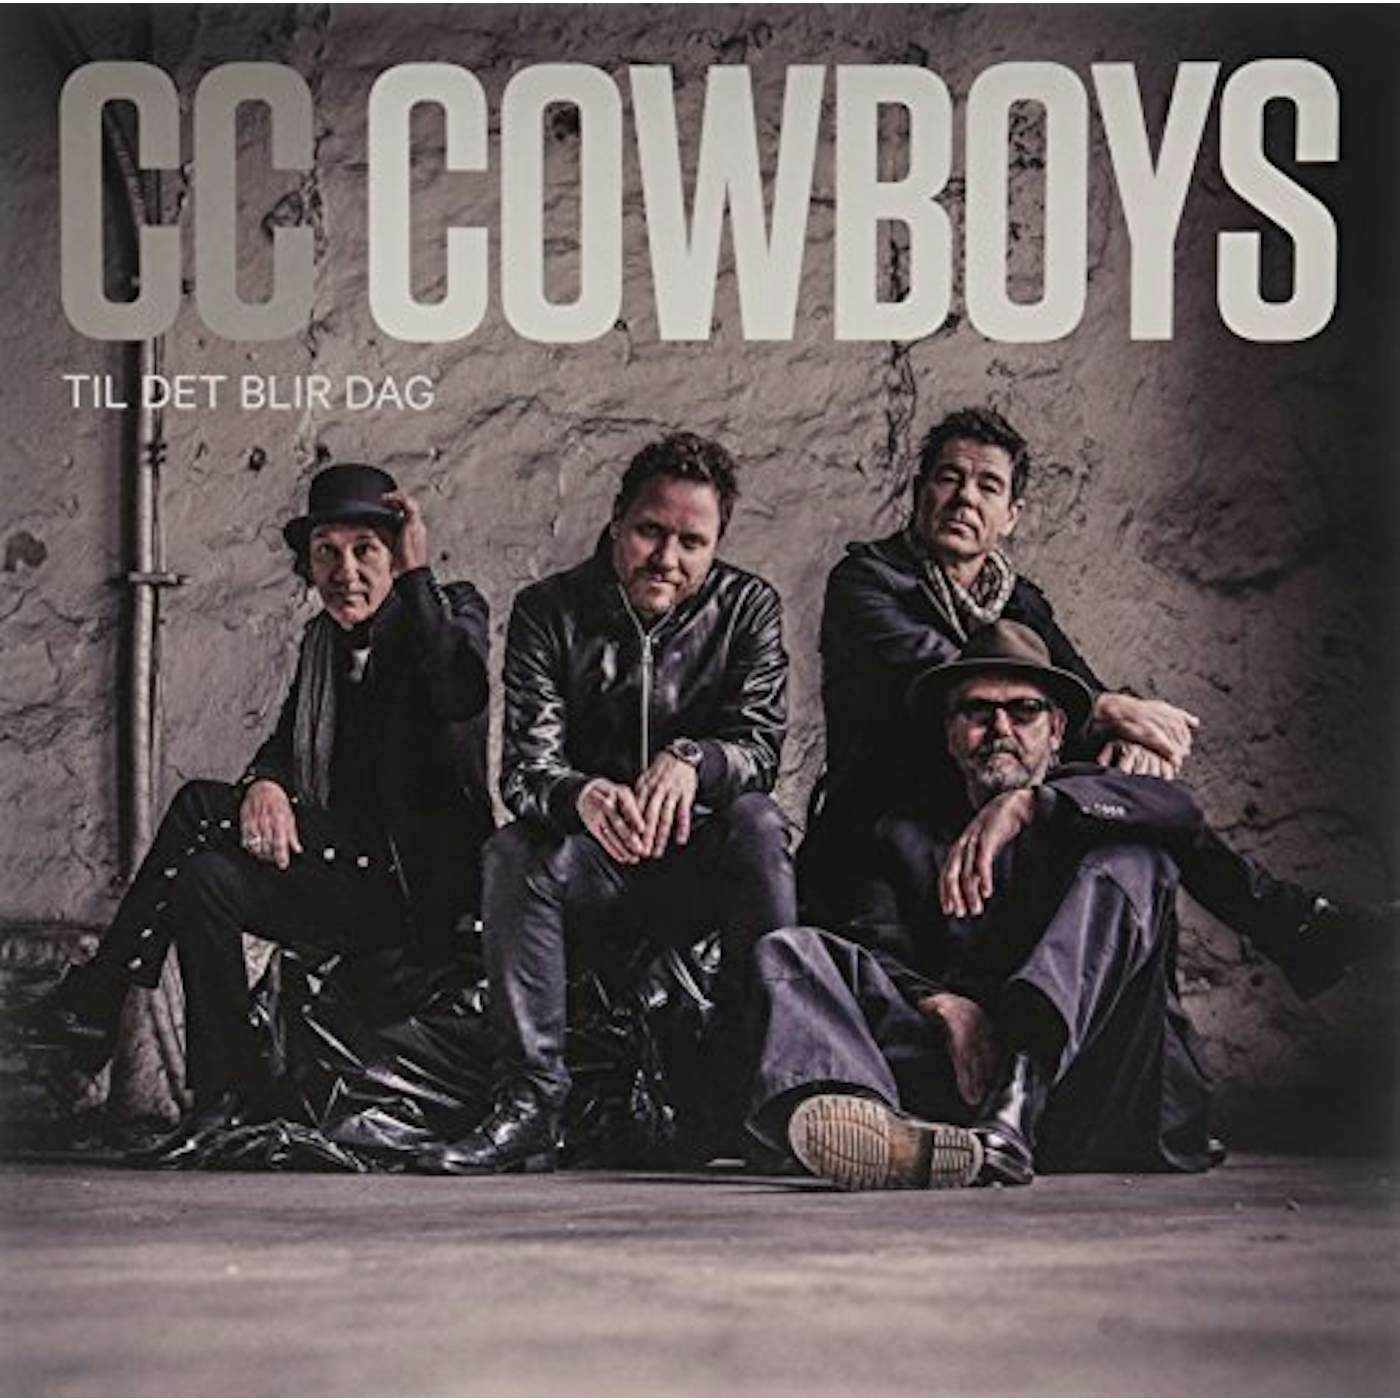 CC Cowboys Til det blir dag Vinyl Record